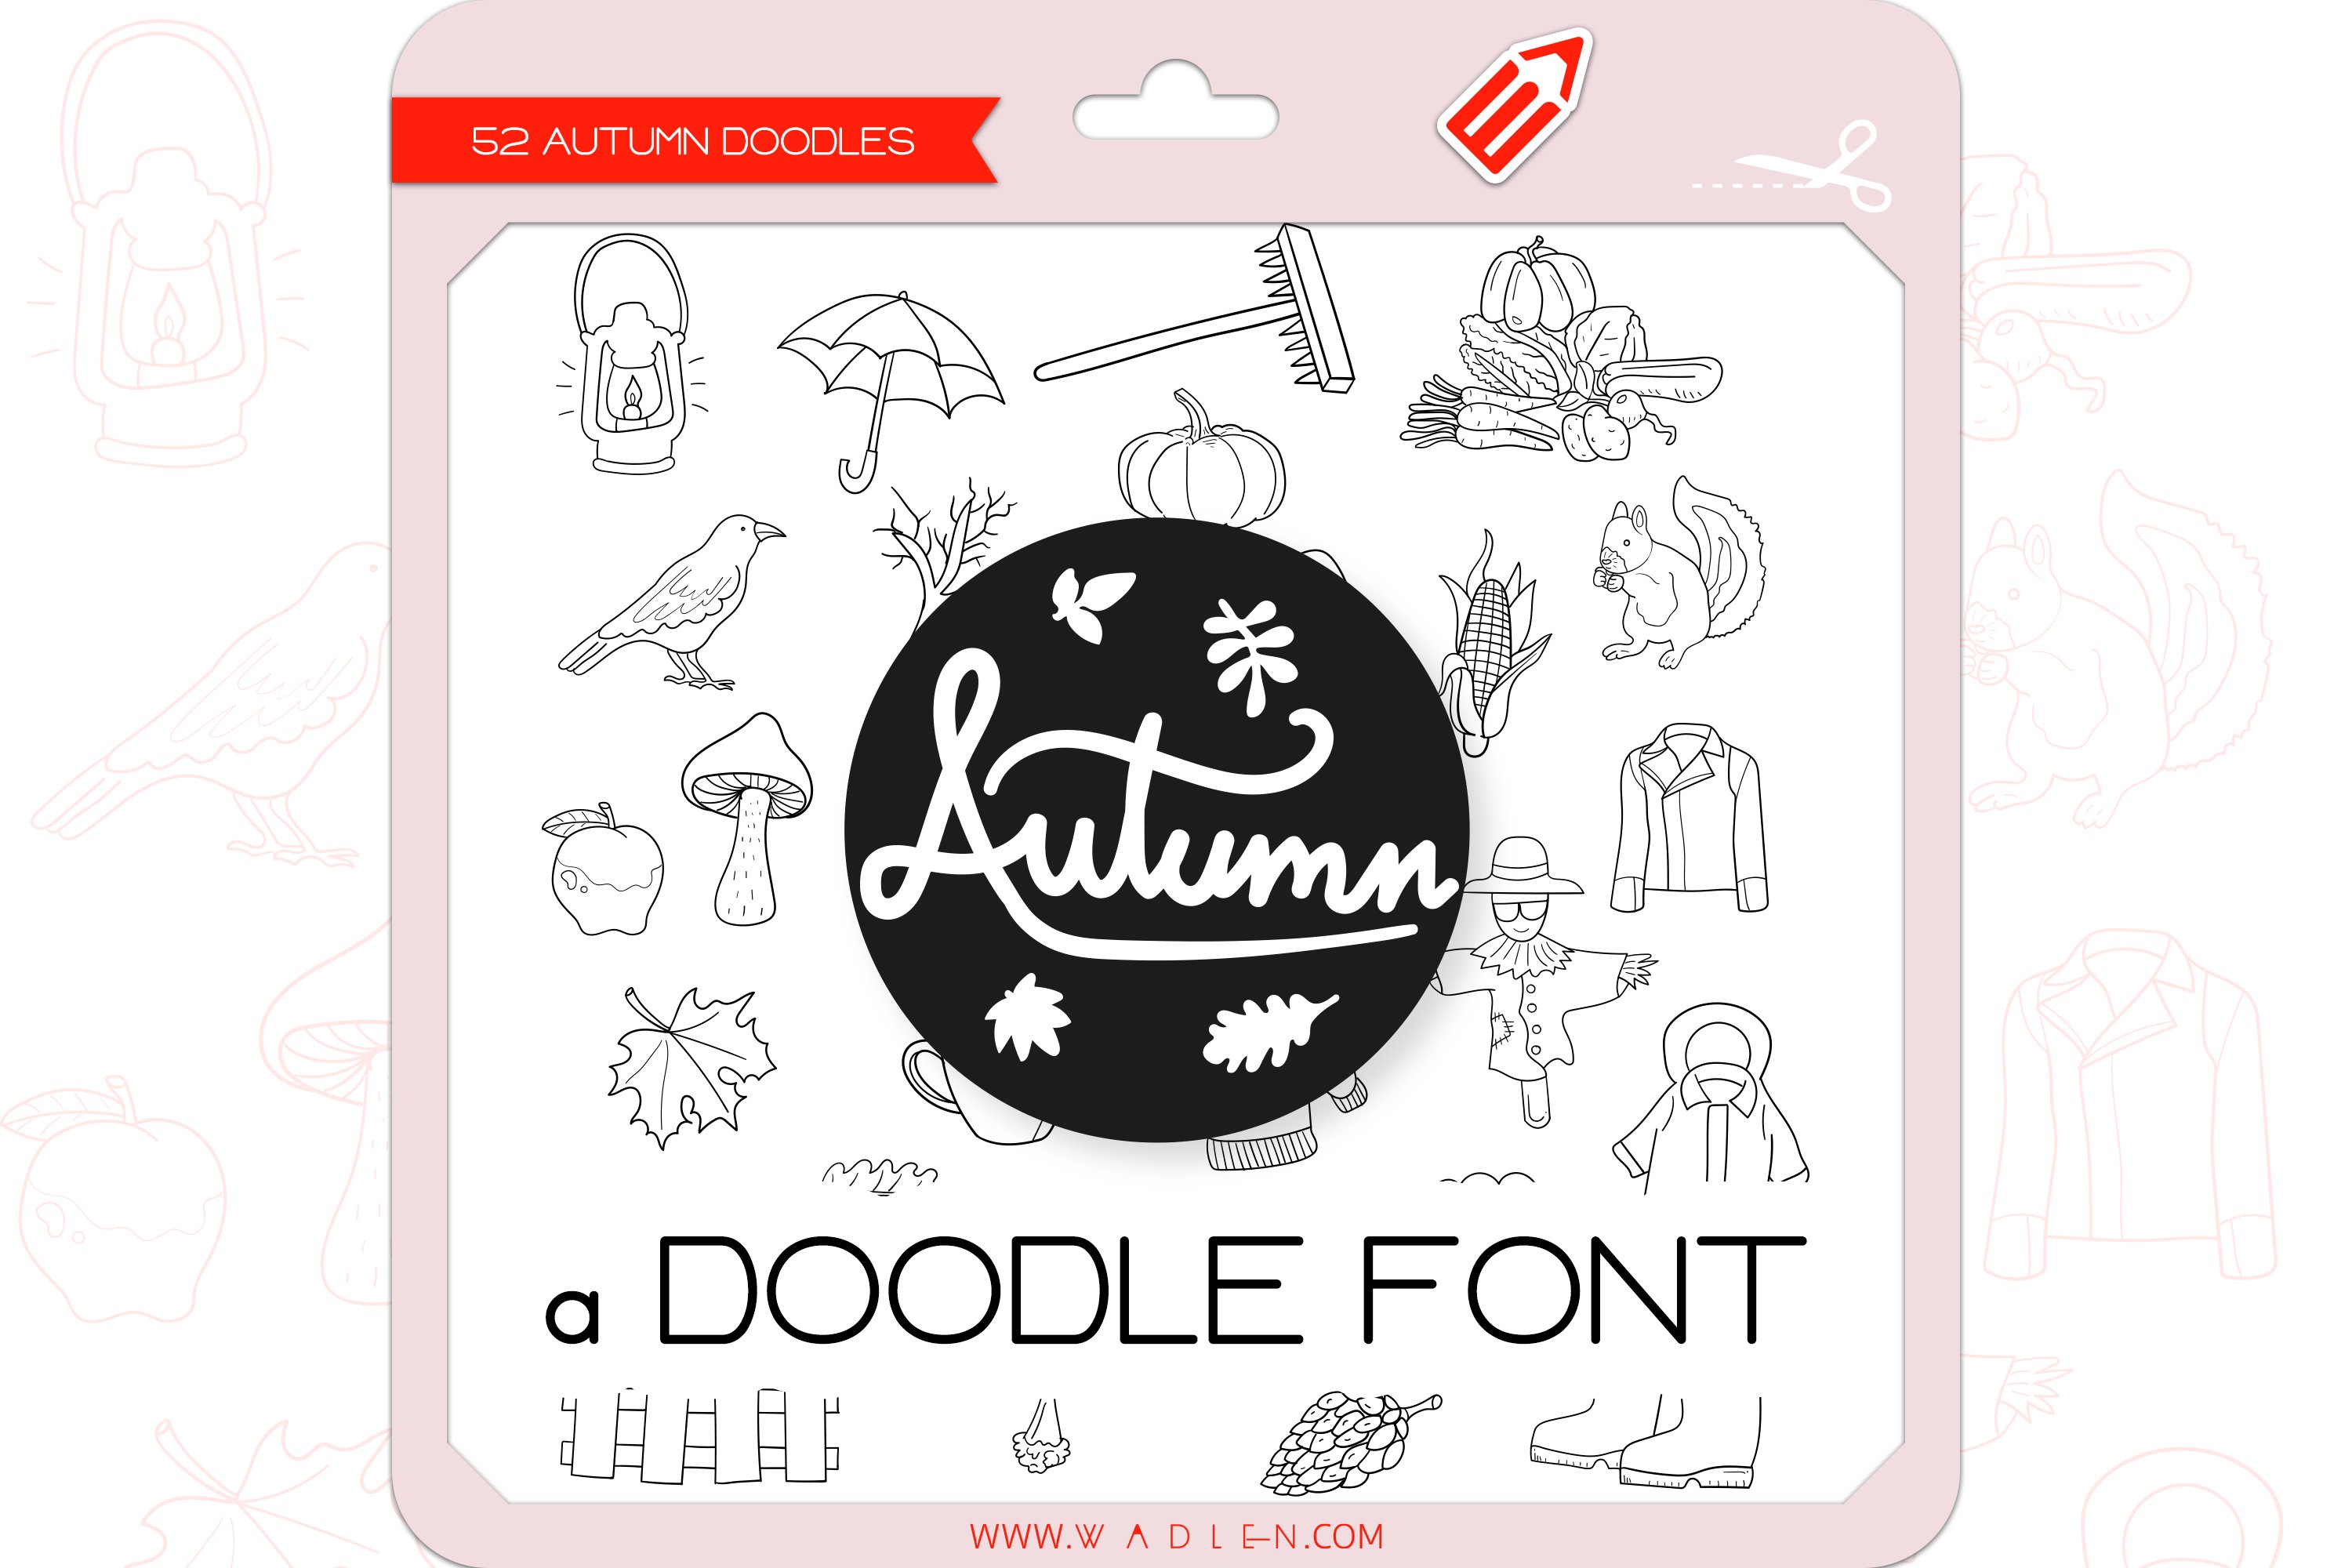 Autumn Doodles - Dingbats Font cover image.